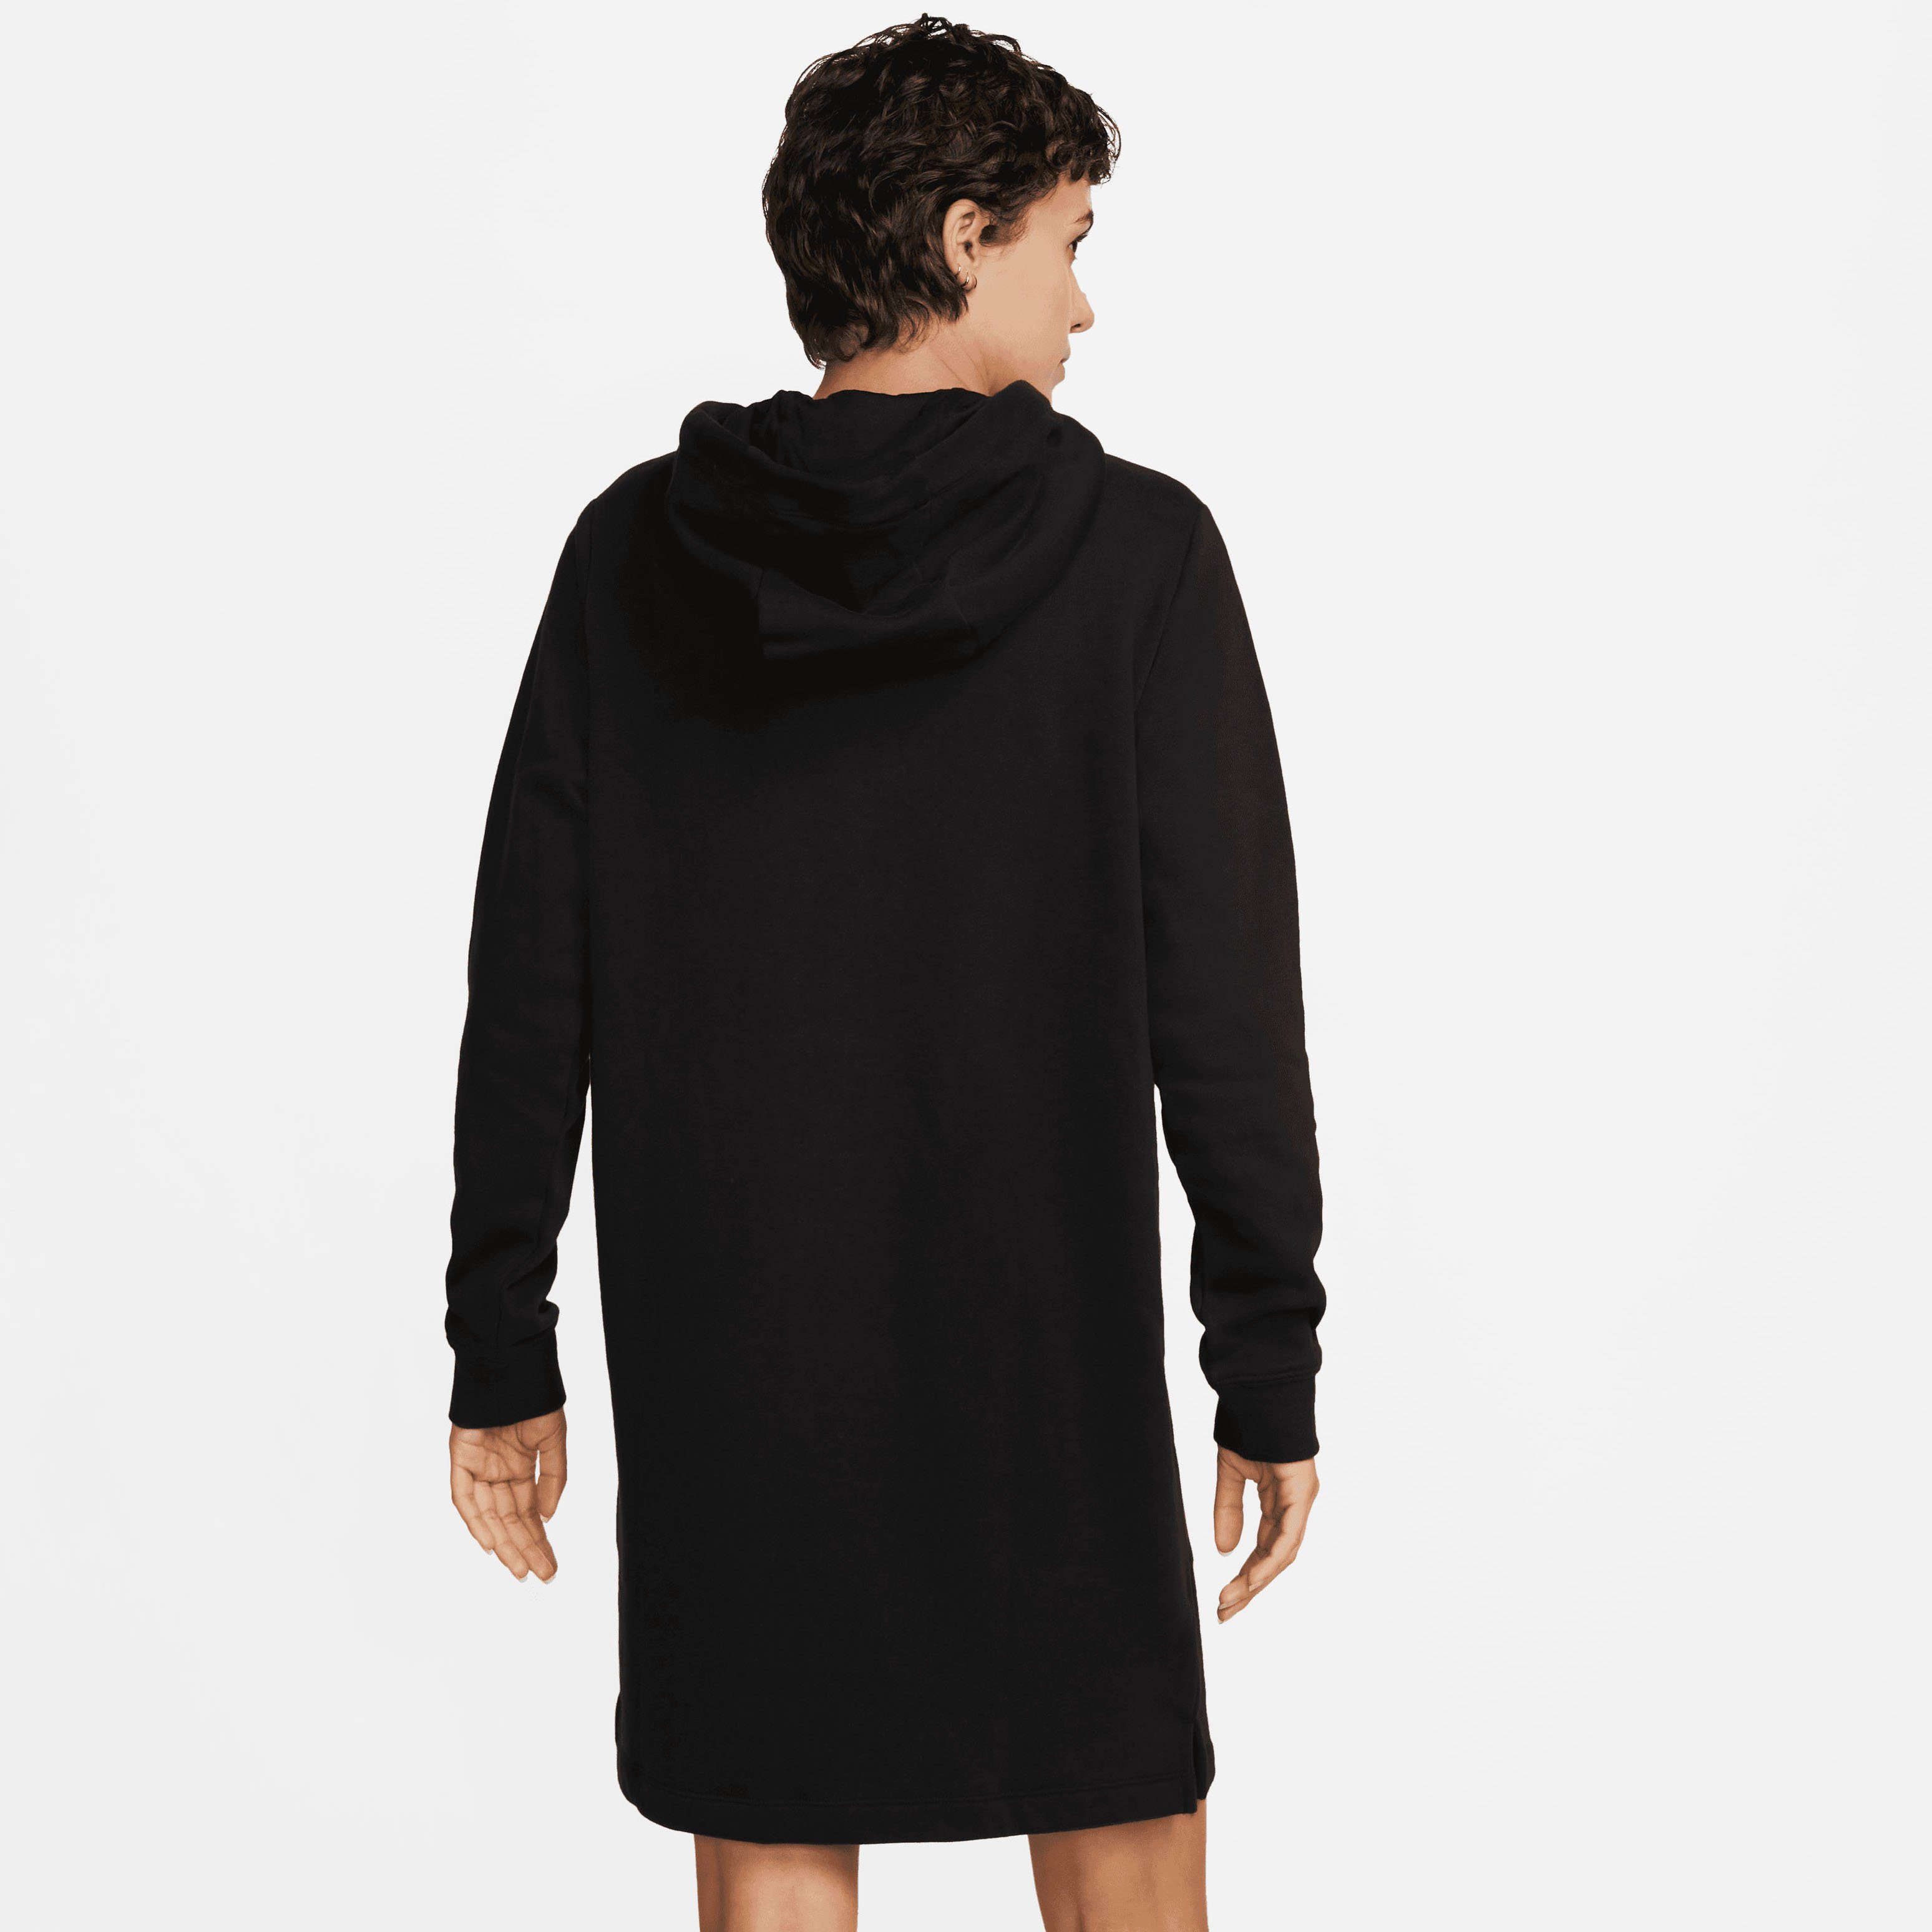 BLACK/WHITE Sportswear Nike Women's Club Dress Fleece Sweatkleid